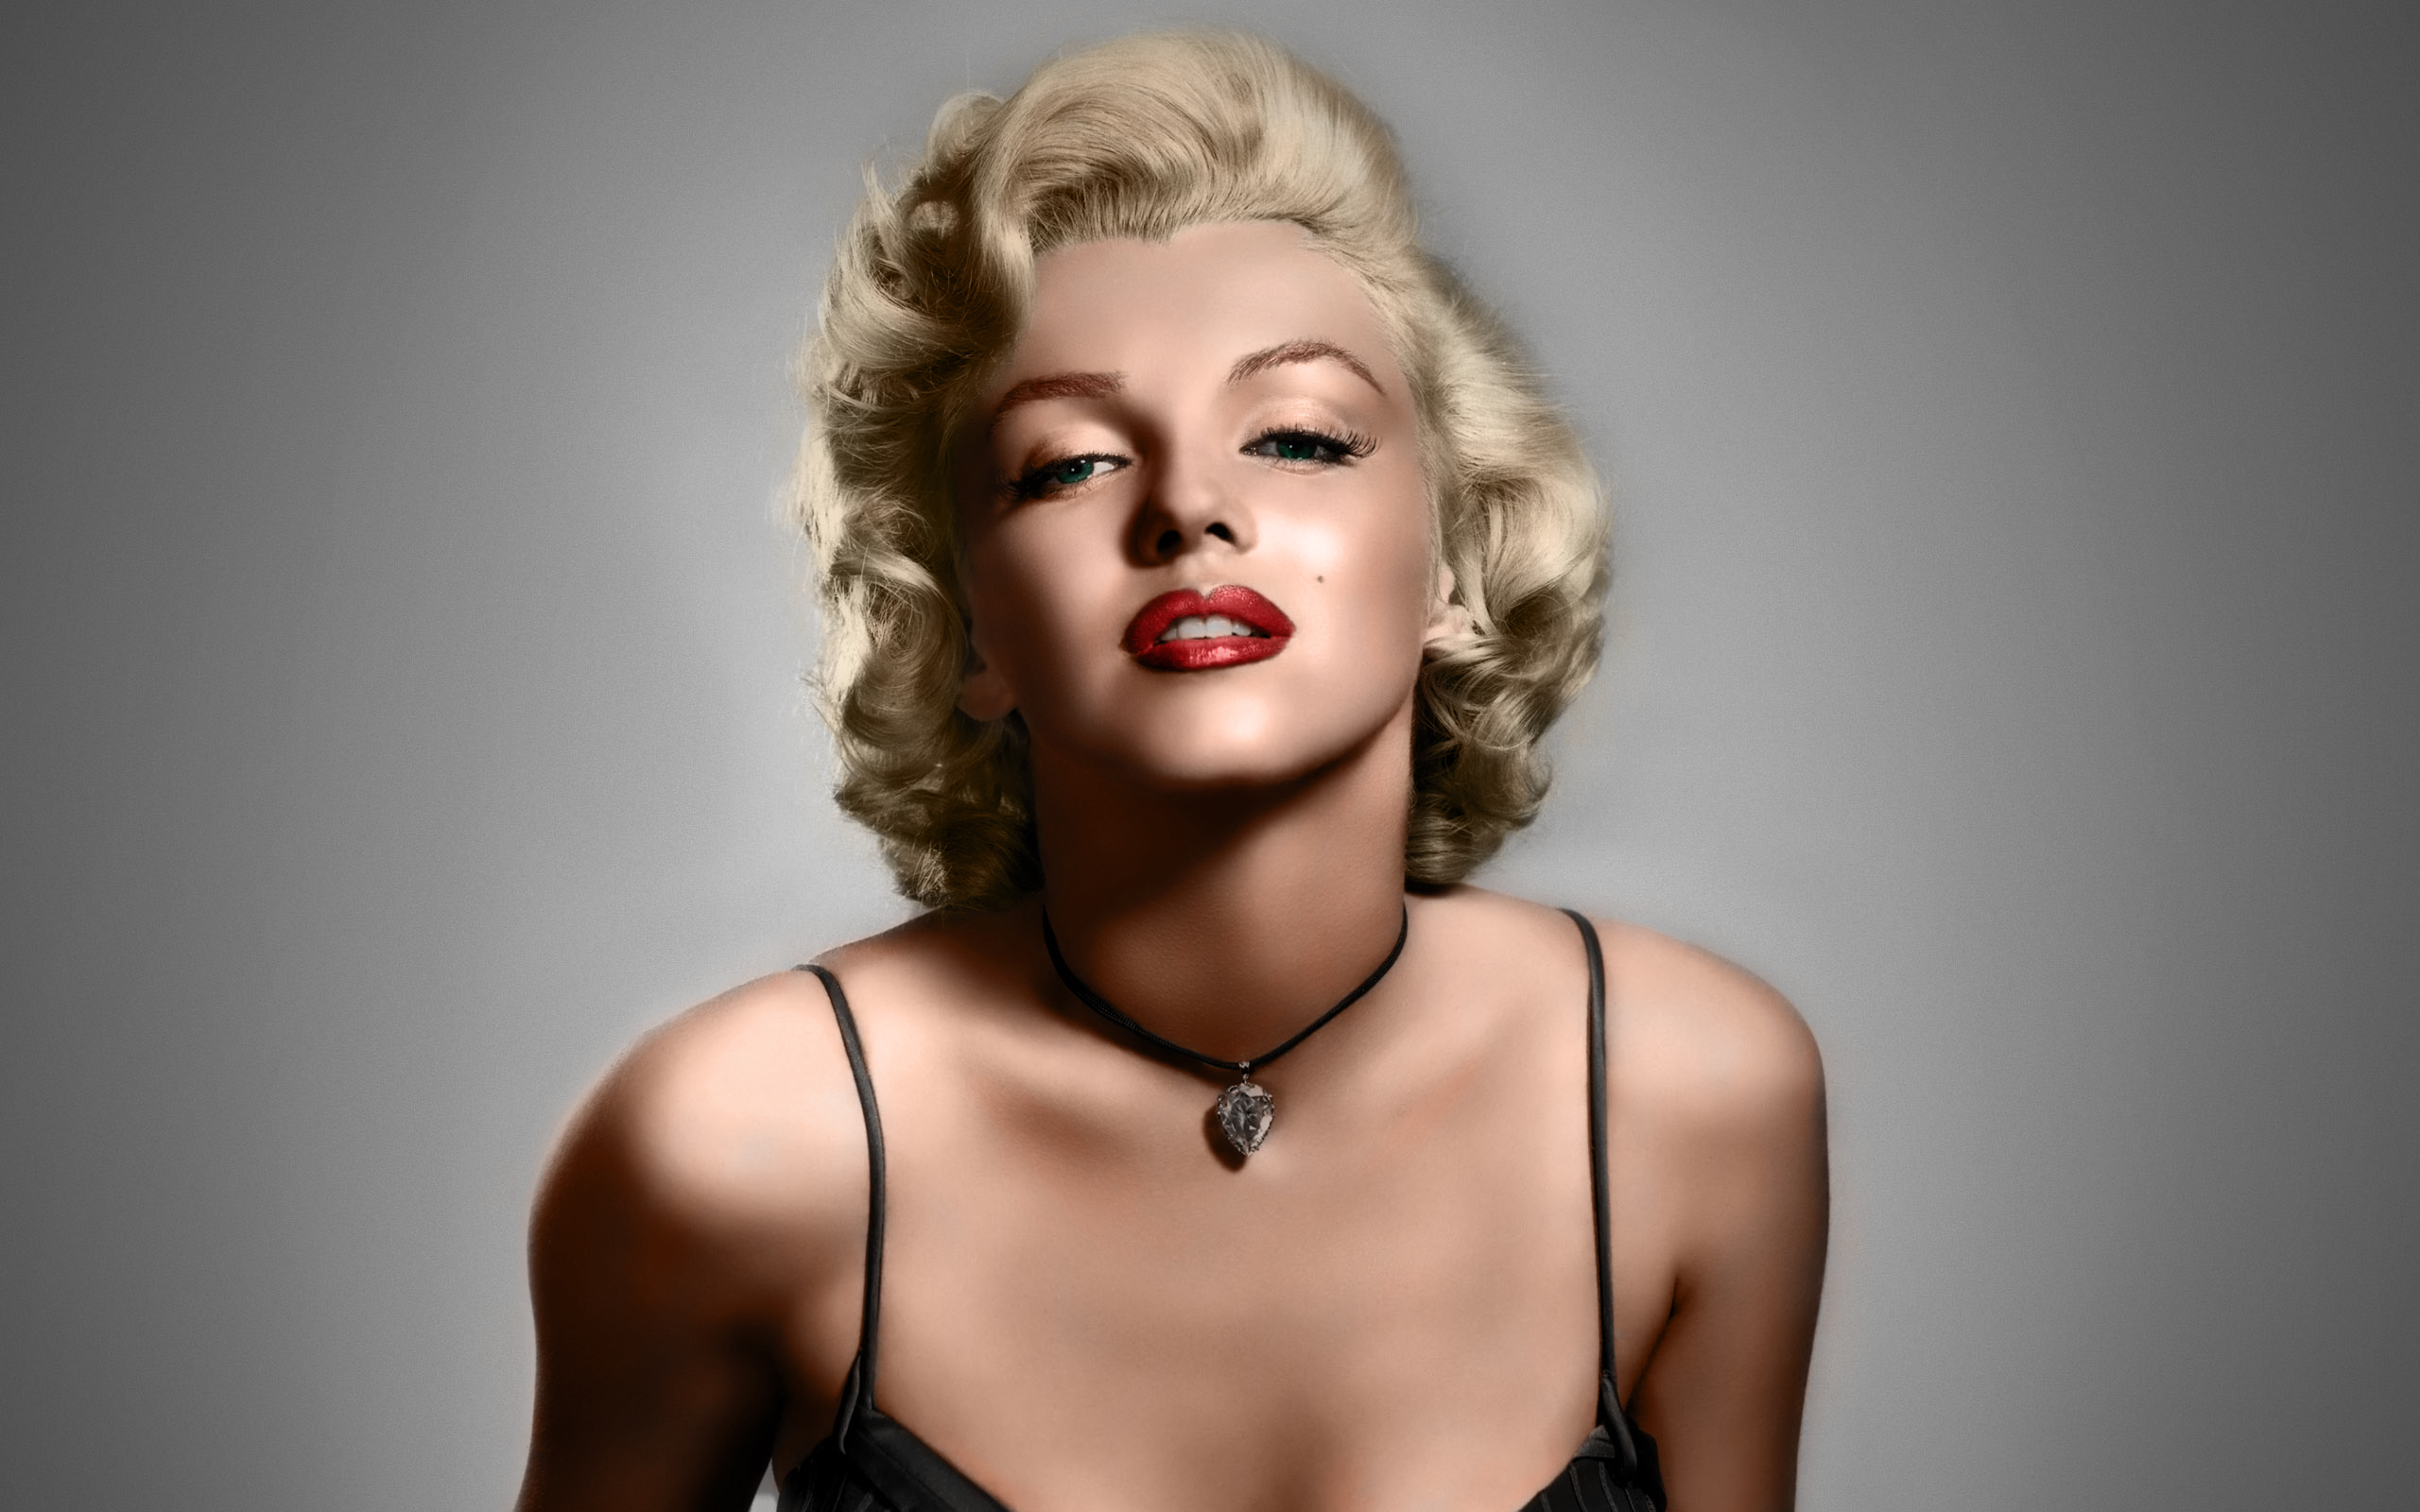 Marilyn Monroe Знаменитости фото Мэрилин Монро обои картинки скачать на раб...